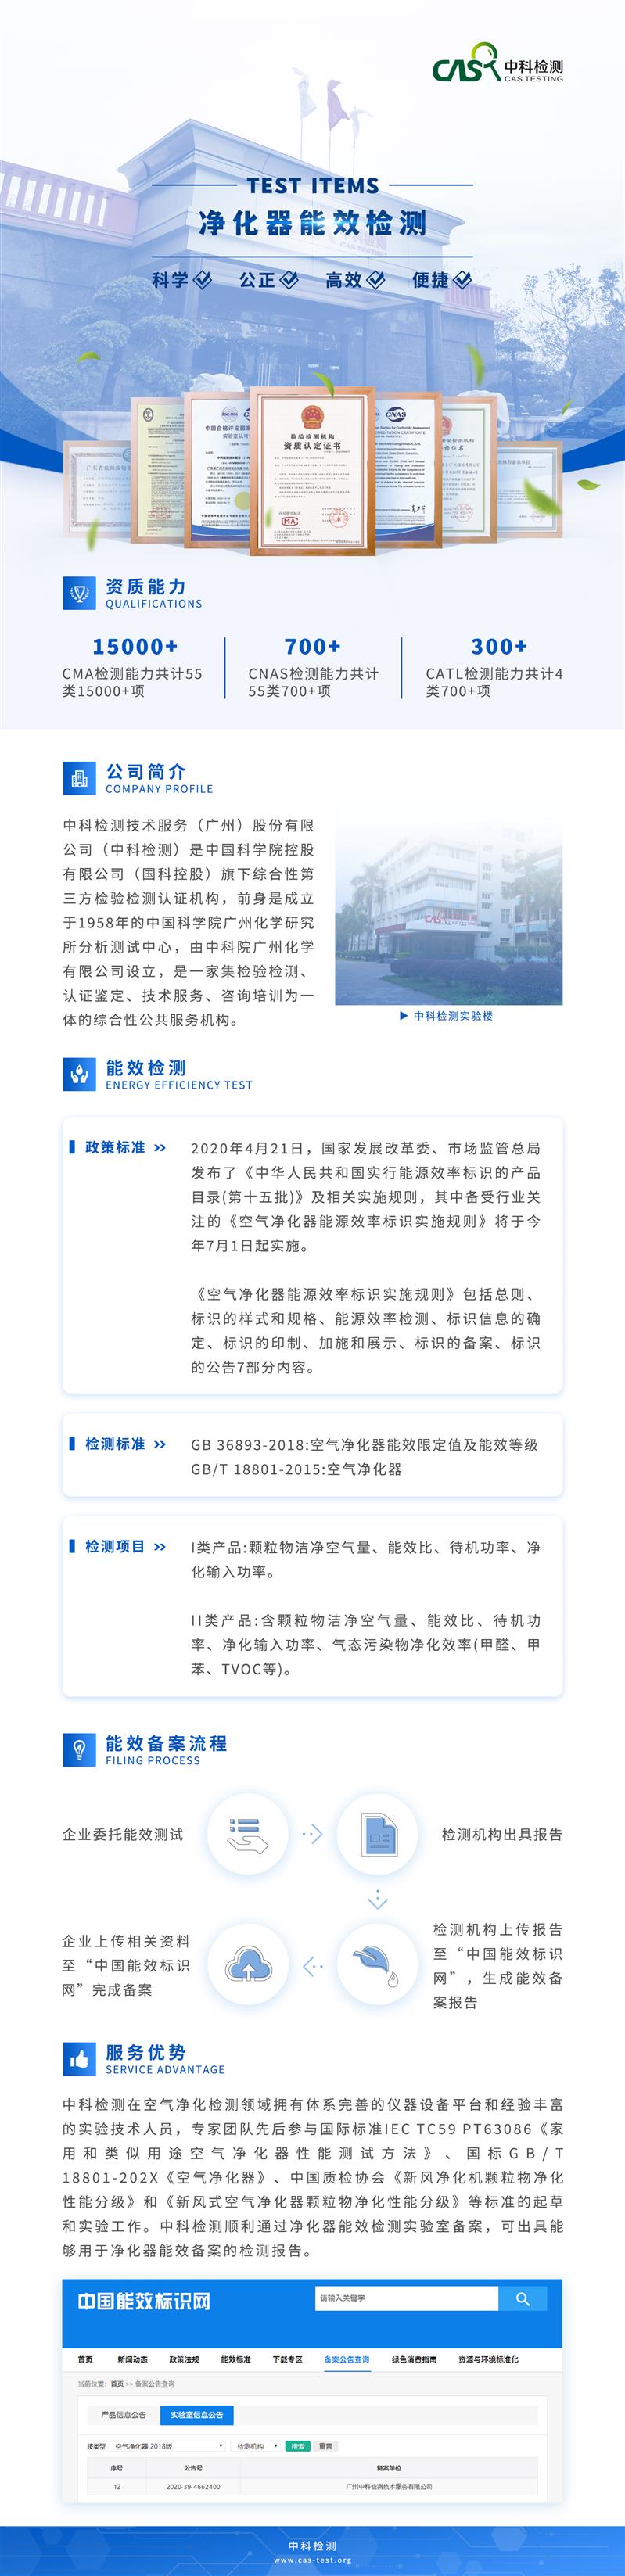 北京GB36893-2018空气净化器检测机构